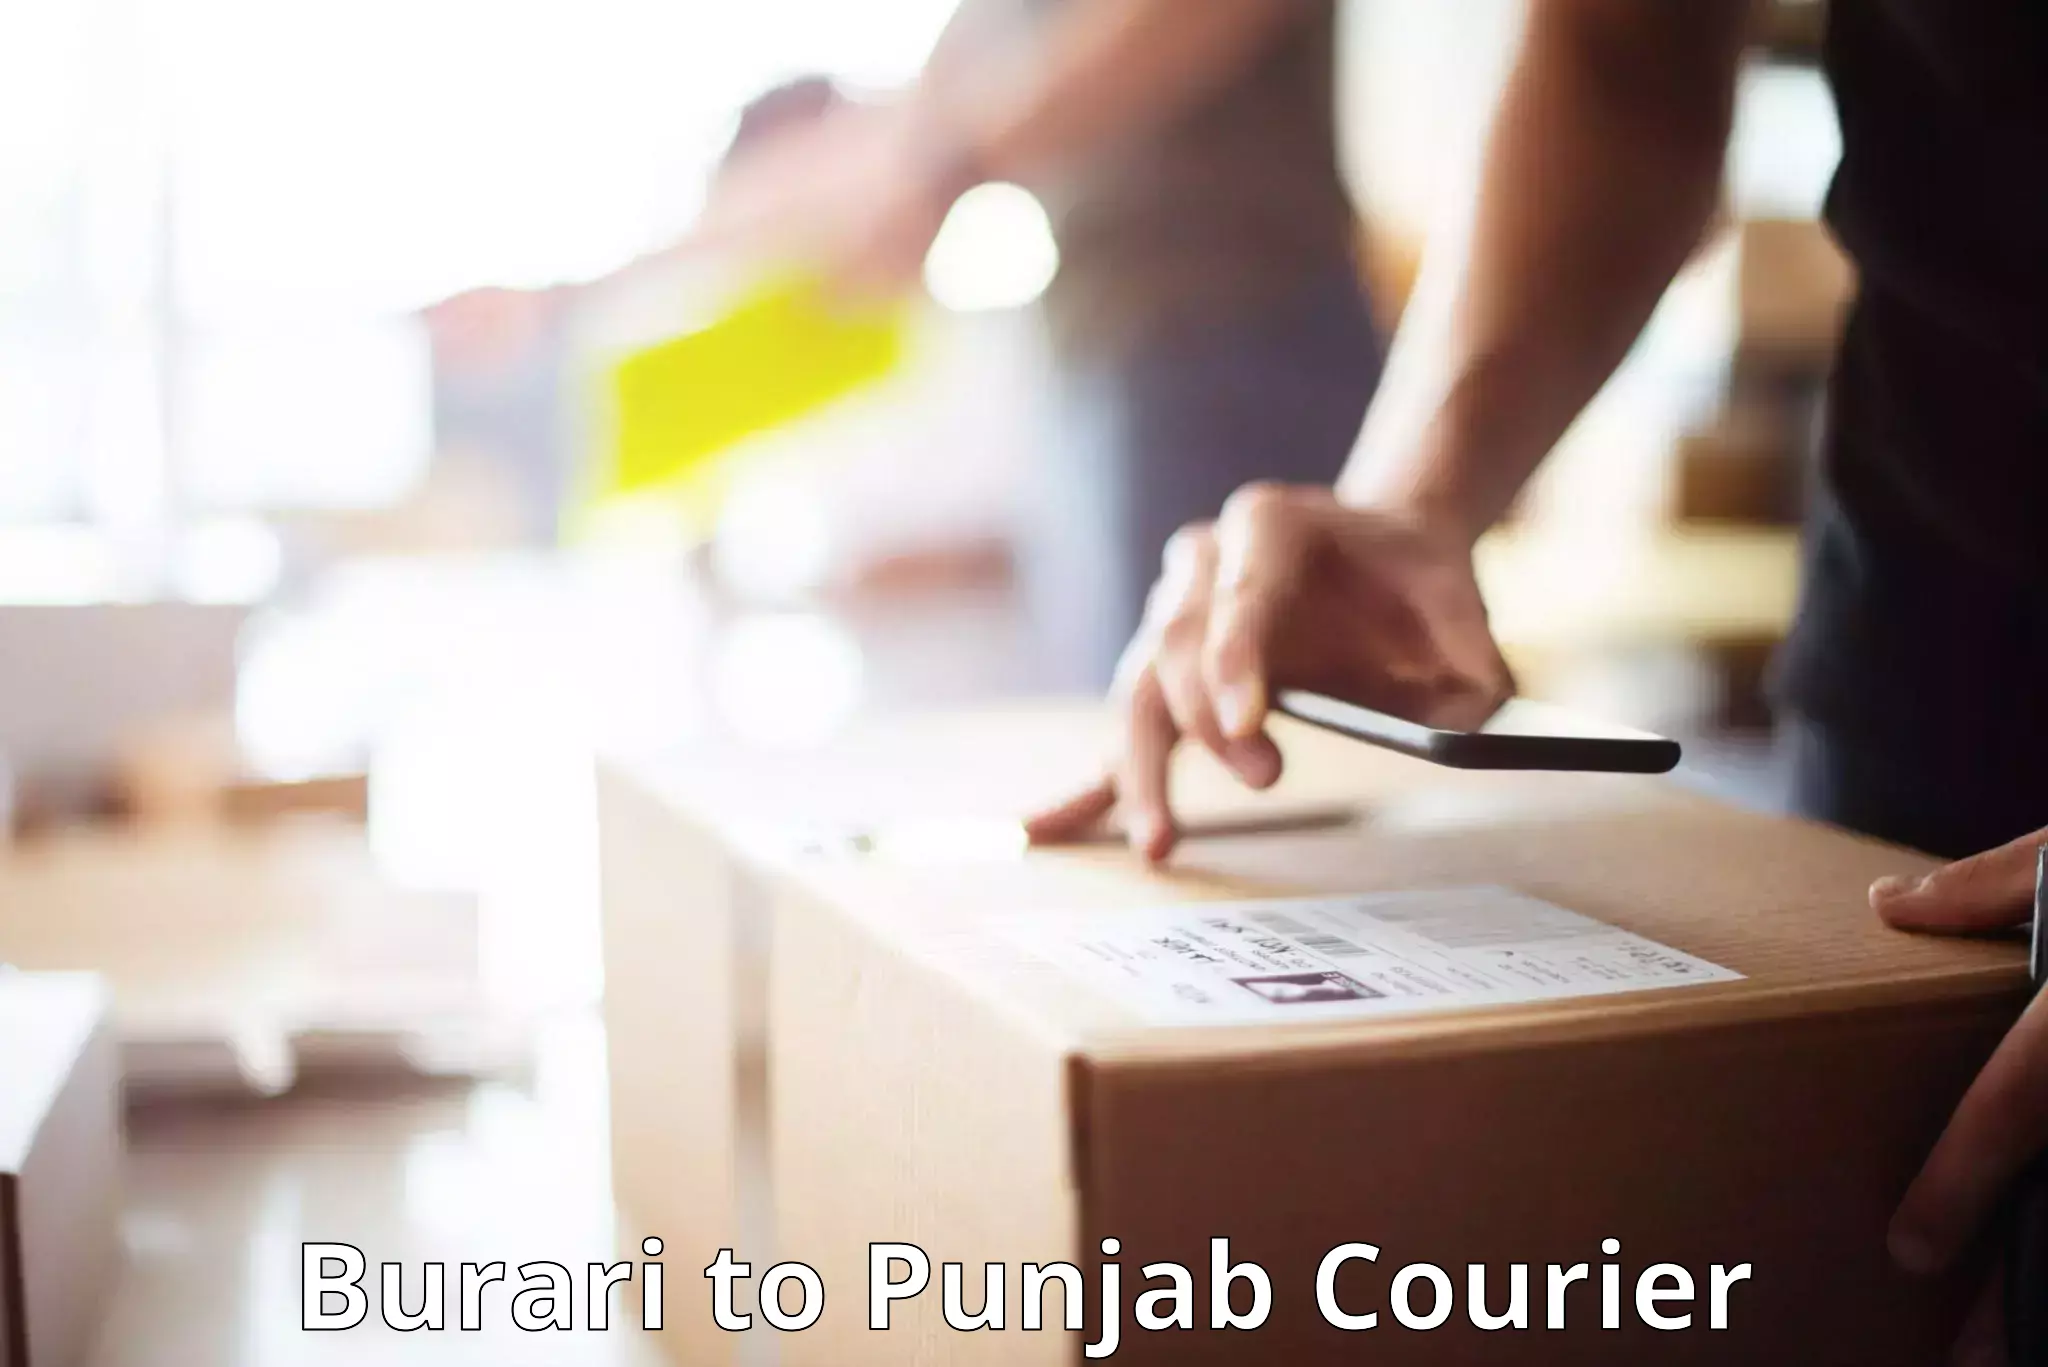 Baggage shipping experts Burari to Punjab